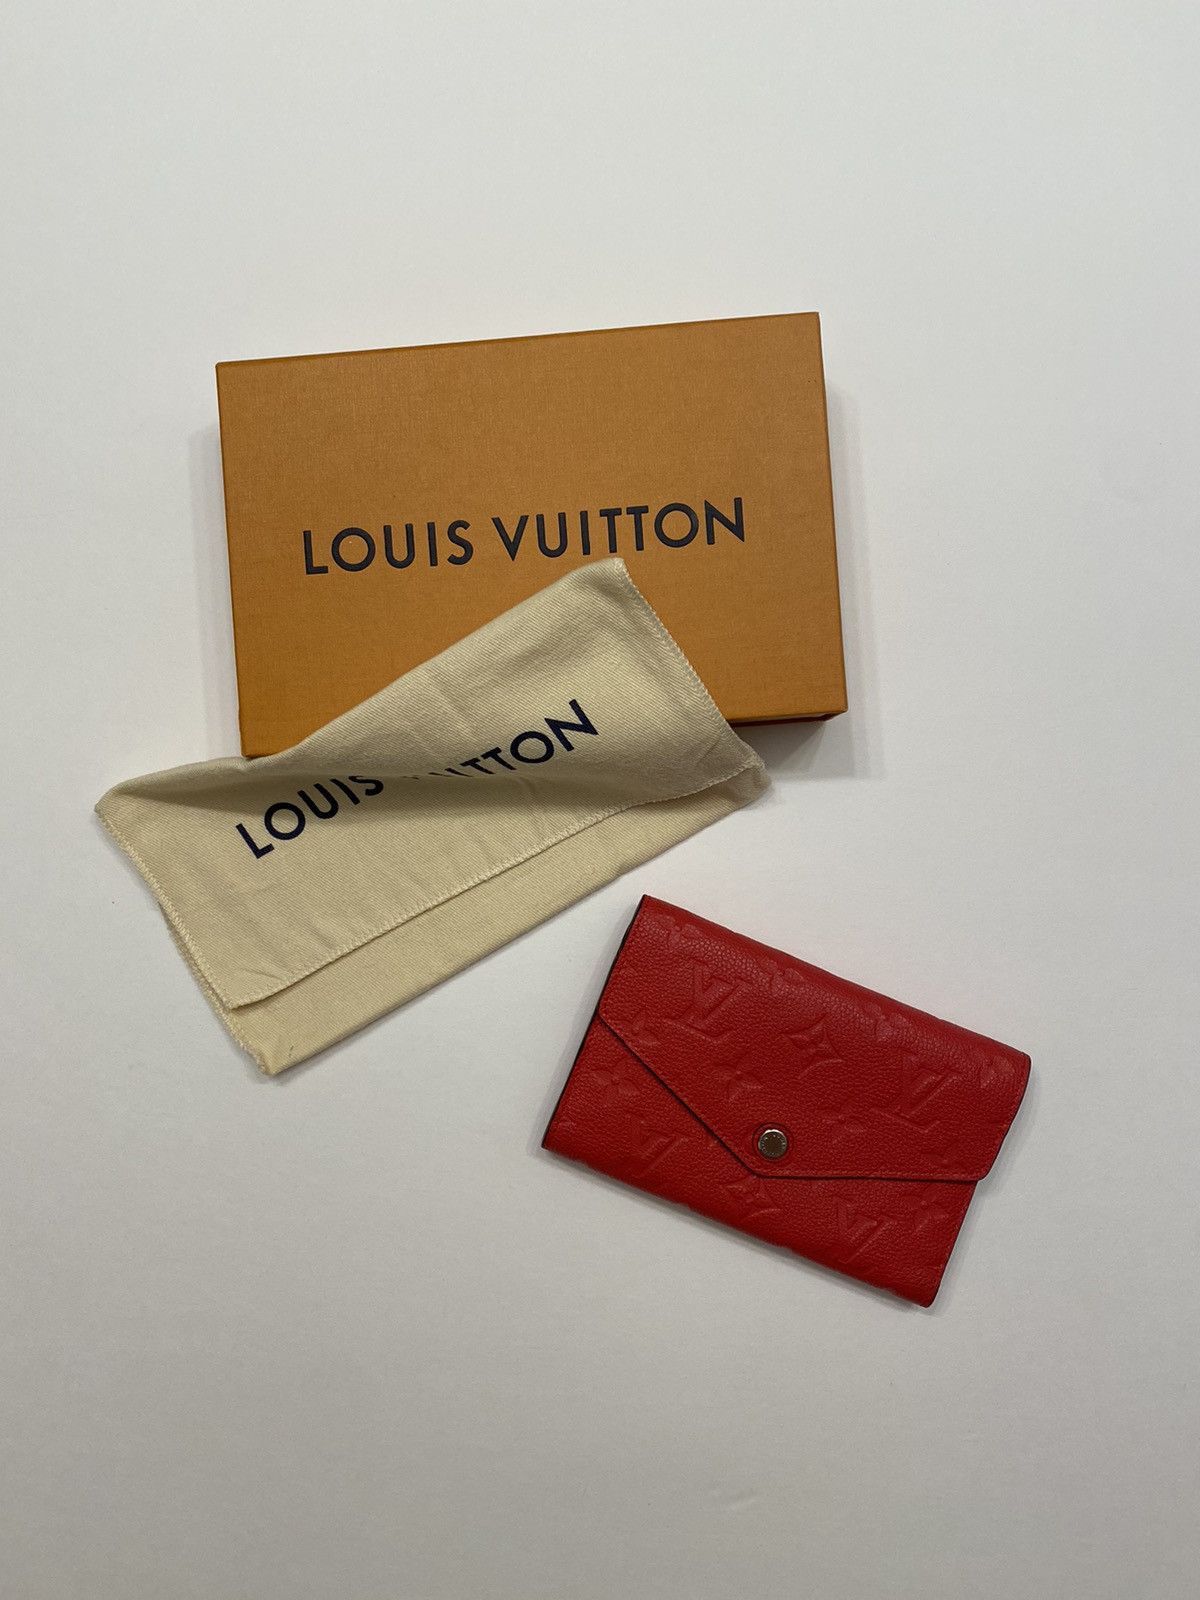 Louis Vuitton M68725 Wallet Portefeuille Dauphine Compact Monogram